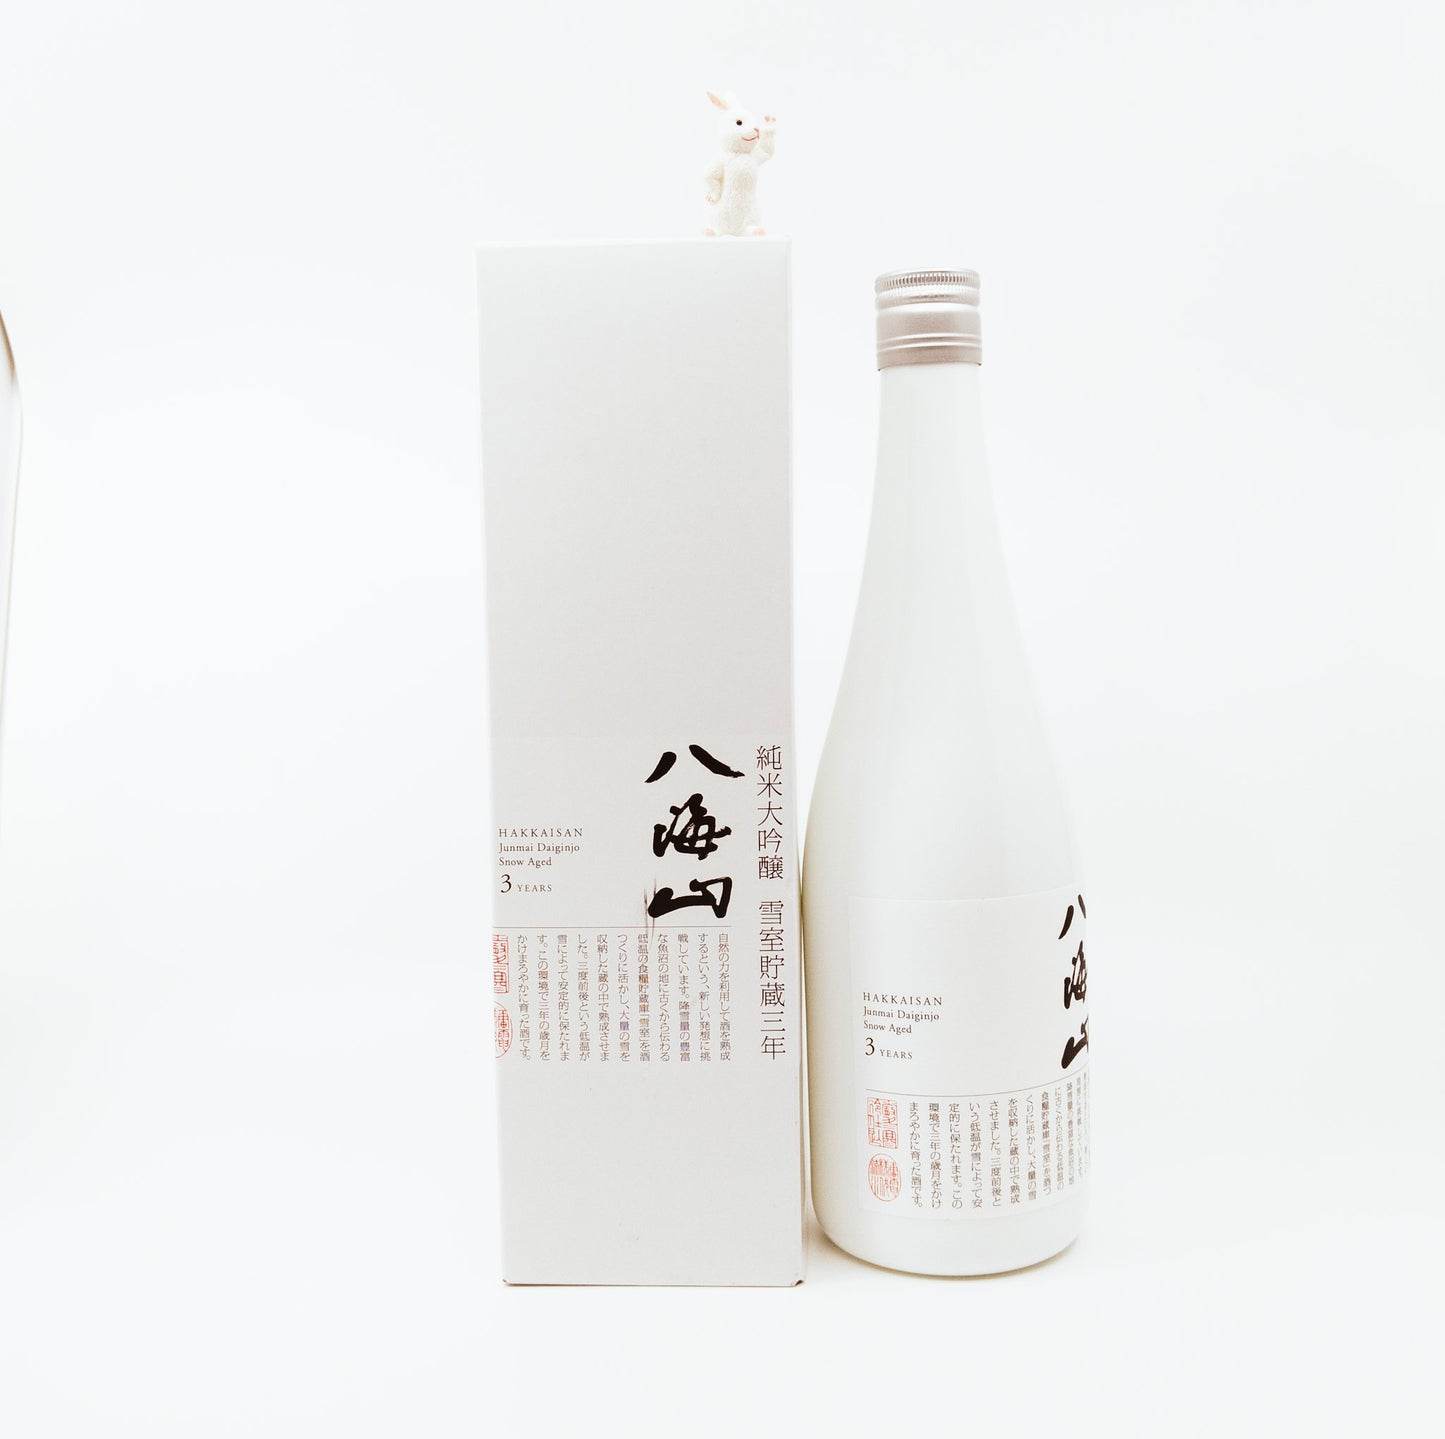 white bottle next to white box